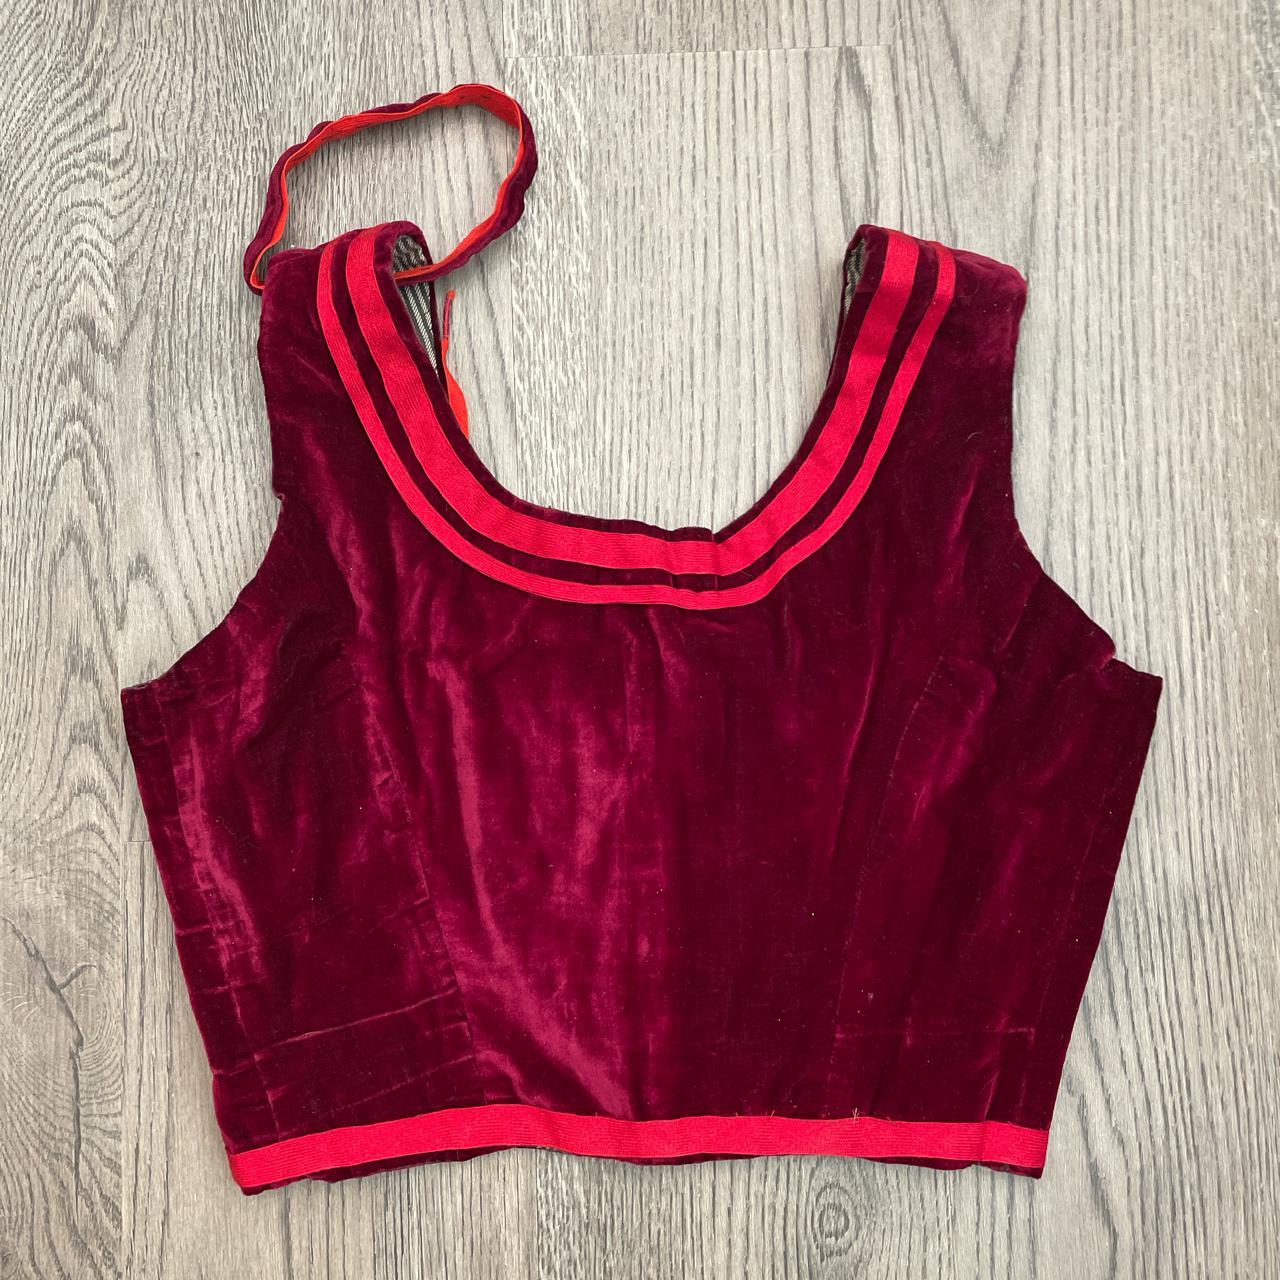 Product Image 3 - Red velvet corset style bralette